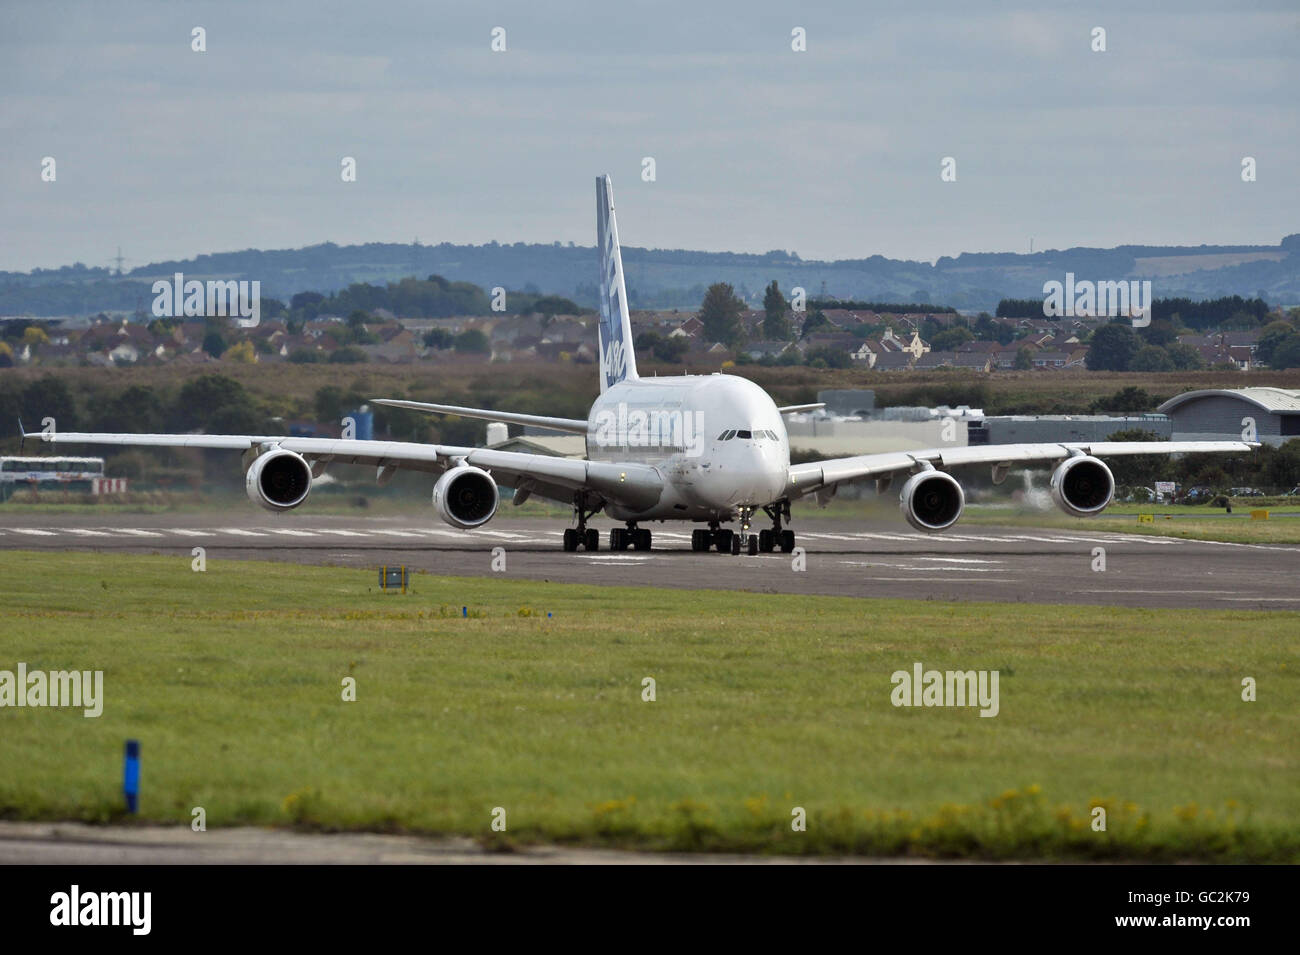 Das Testflugzeug MSN1, ein Airbus A380 Superjumbo-Jet, startet vom Flughafen Filton in Bristol nach Tolouse, Frankreich, nach einer Tour durch Europa und Großbritannien, wo schätzungsweise eine Million Menschen das Flugzeug gesehen haben. Stockfoto